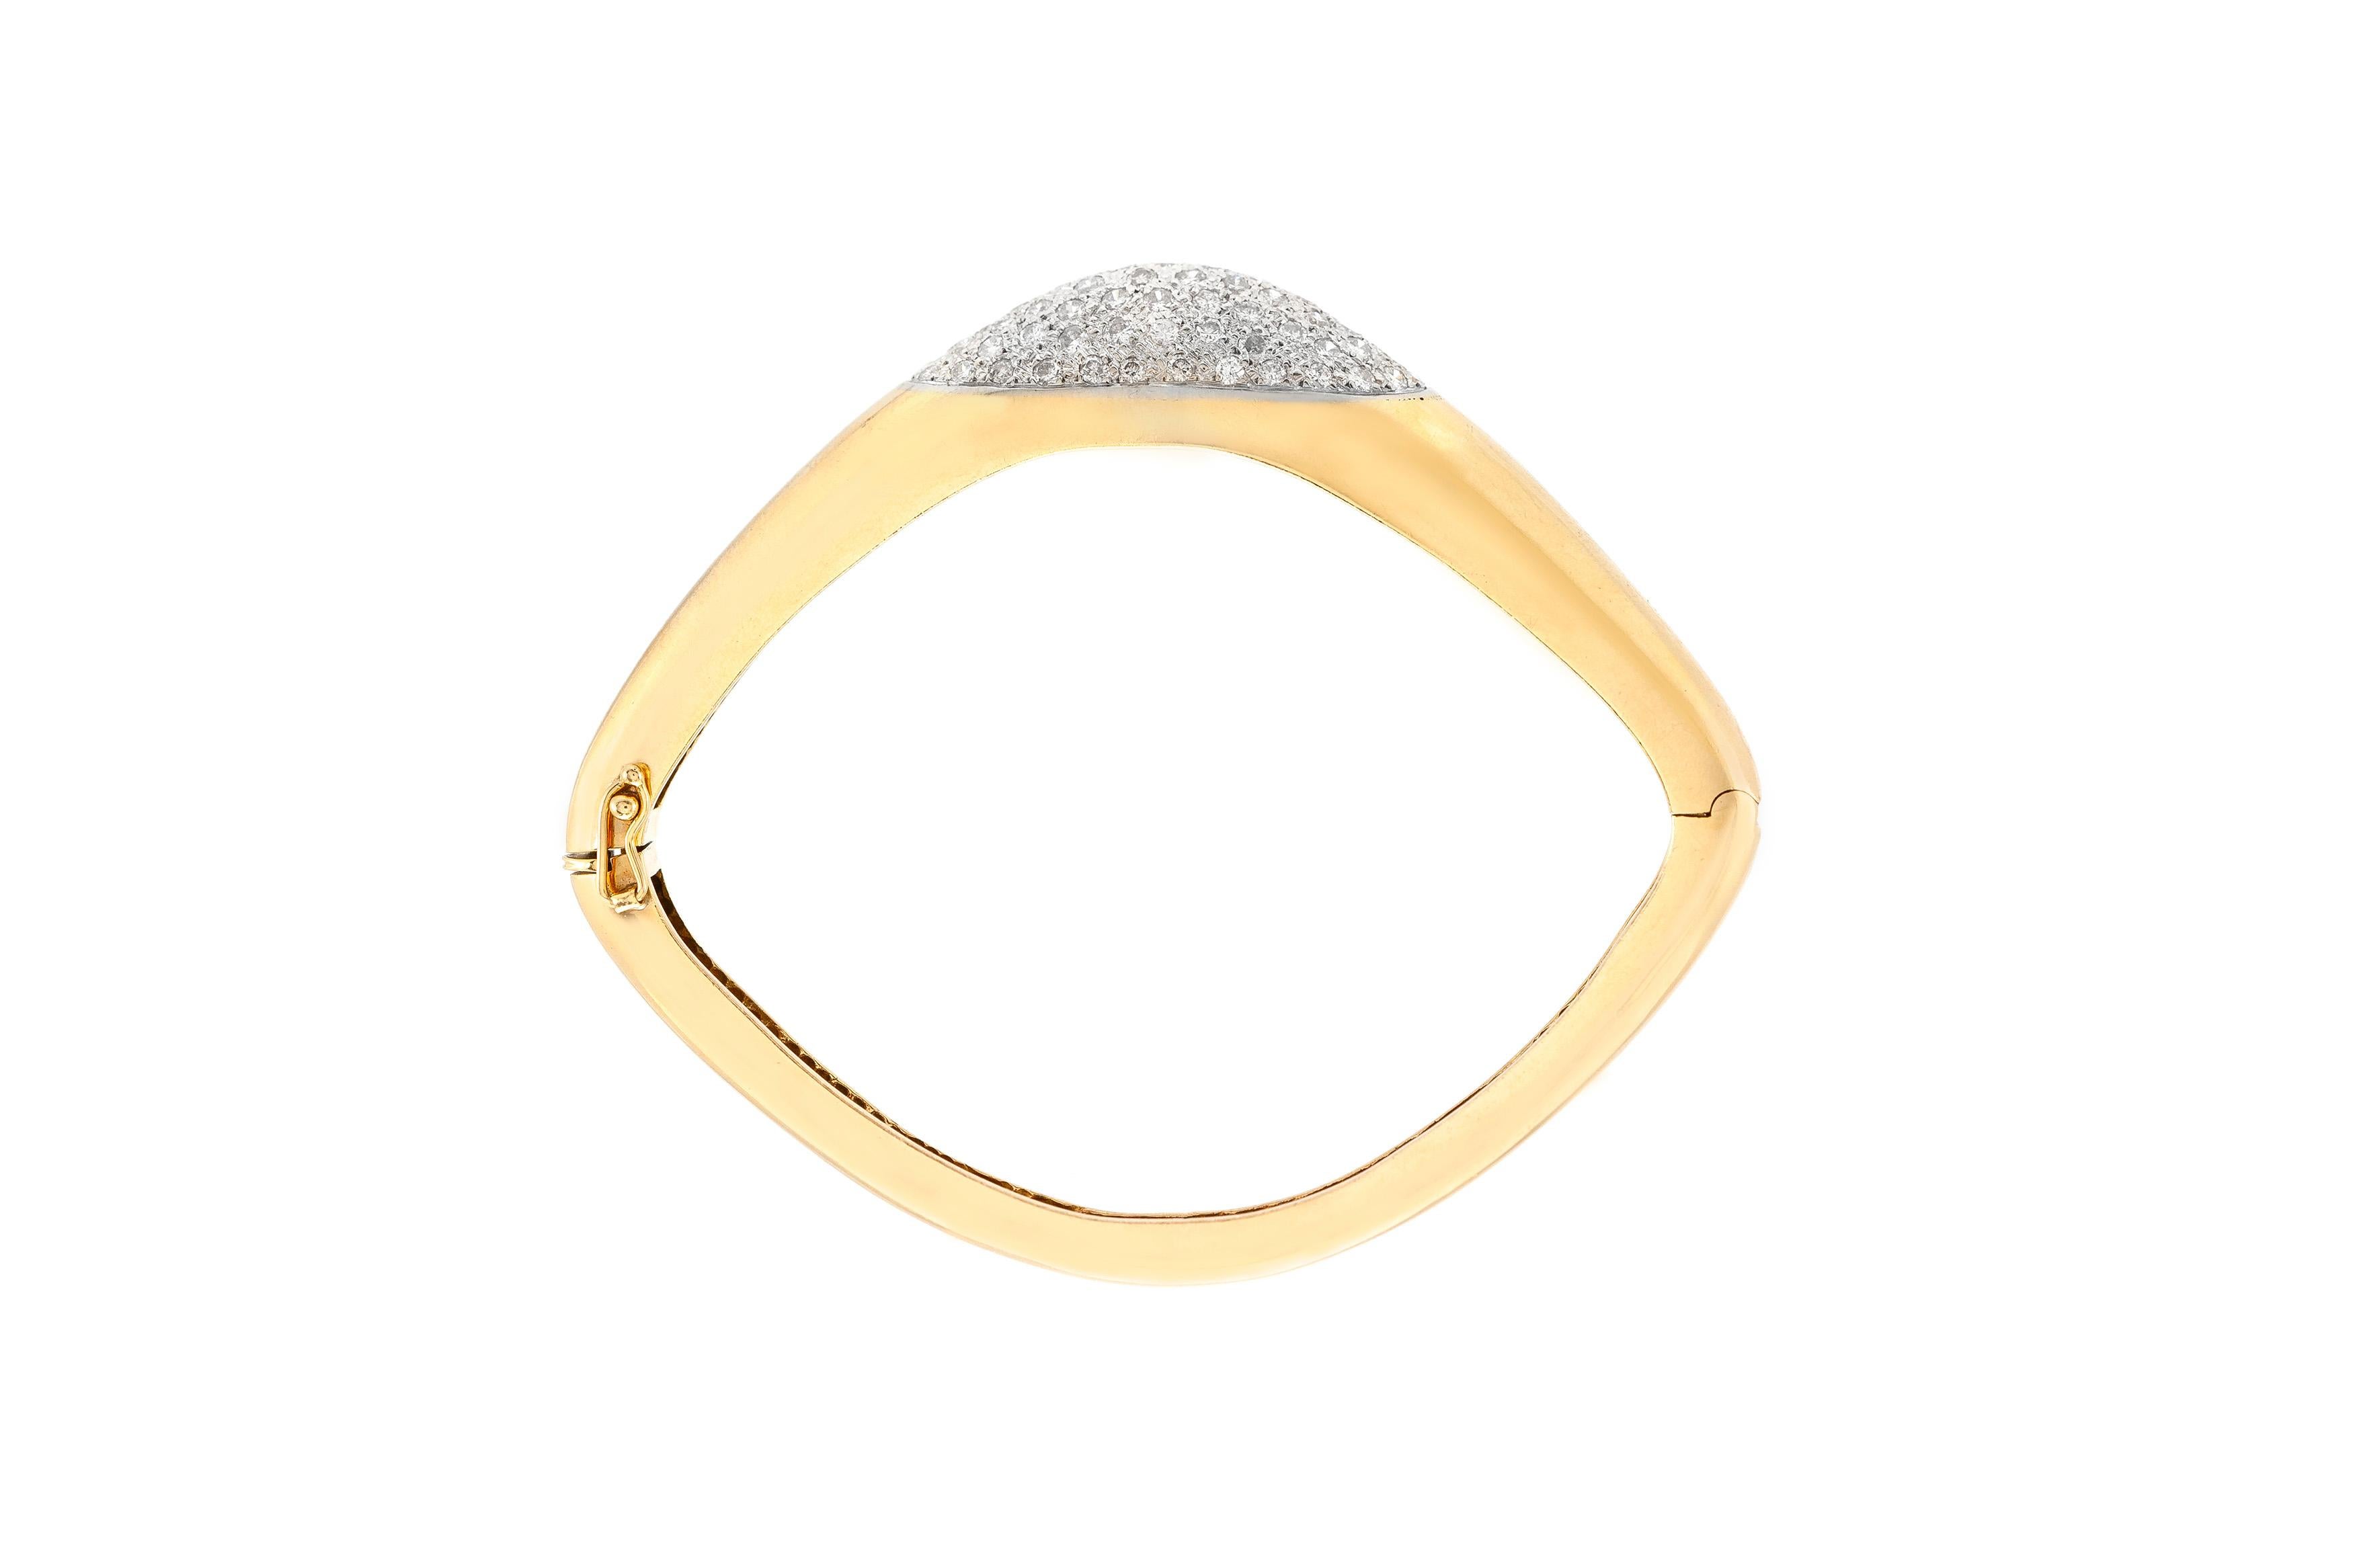 Le bracelet est finement réalisé en or jaune 14k avec des diamants d'un poids total d'environ 3,95 carats.